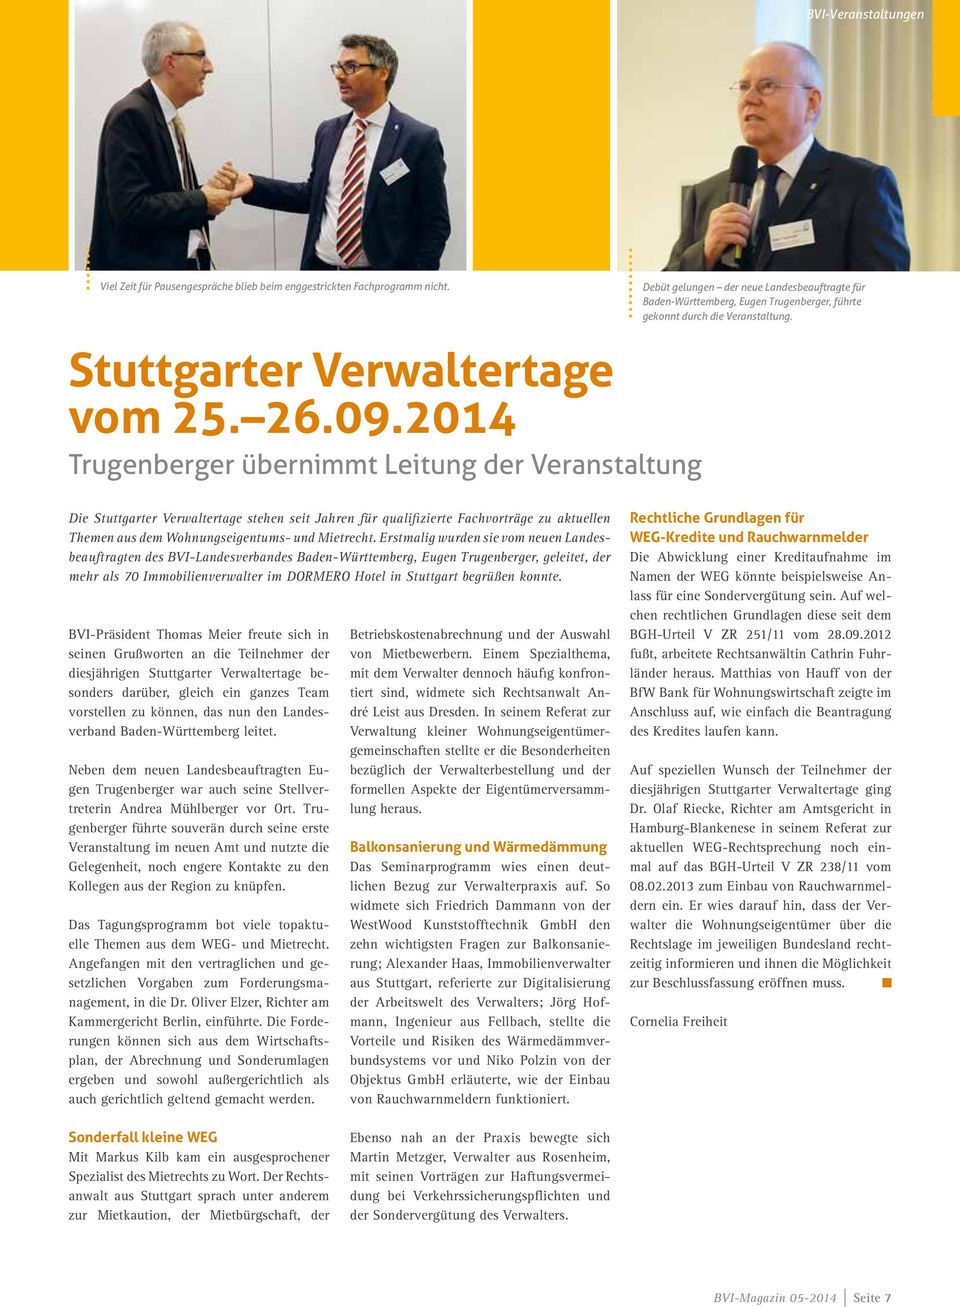 Die Stuttgarter Verwaltertage stehen seit Jahren für qualifizierte Fachvorträge zu aktuellen Themen aus dem Wohnungseigentums- und Mietrecht.